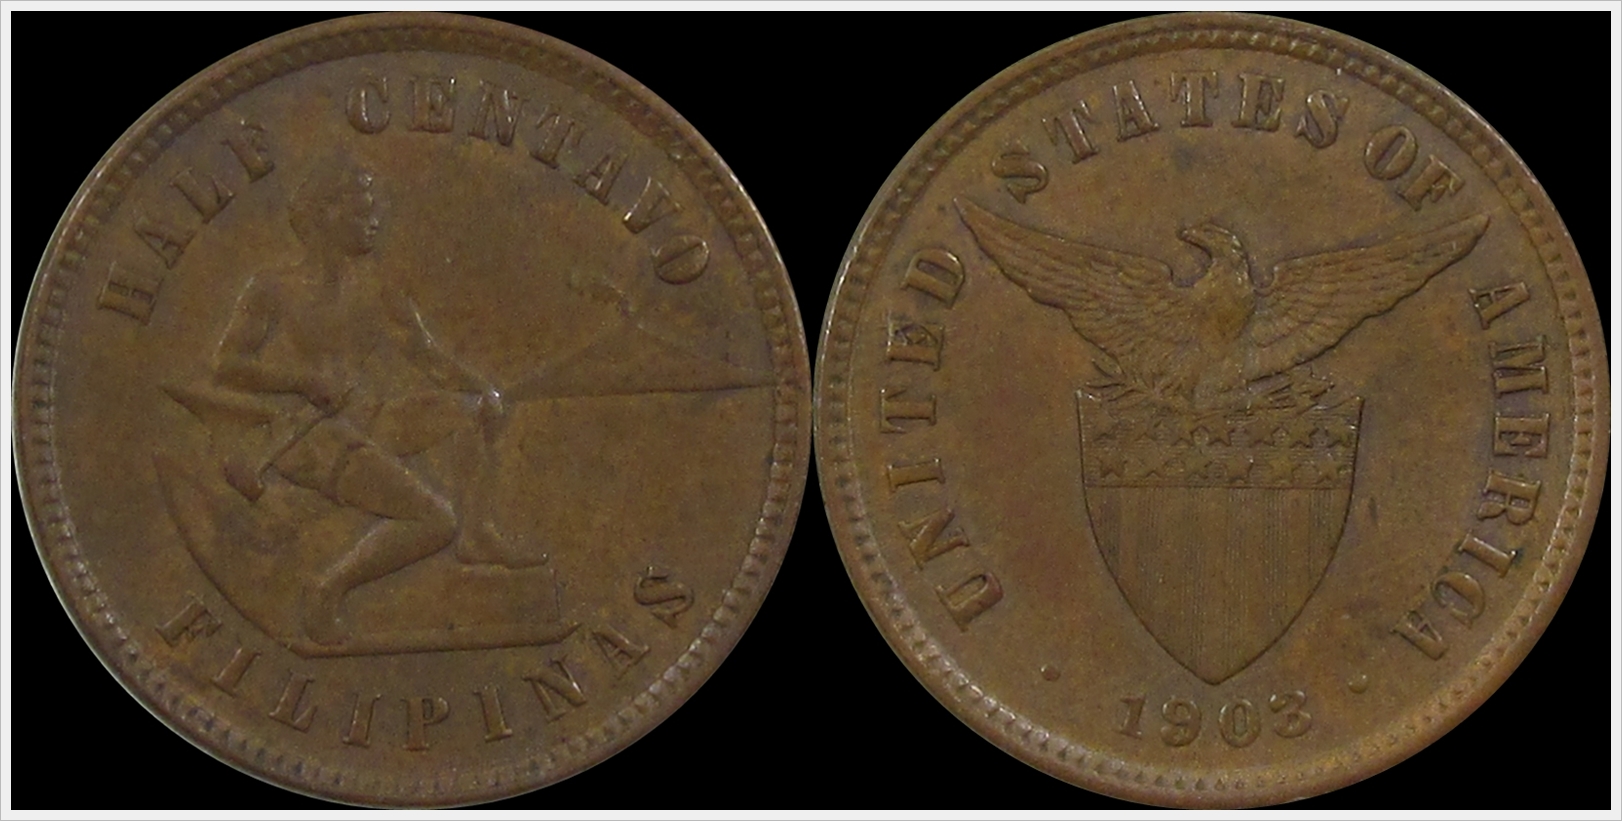 Philippines 1903 Half Centavo.jpg